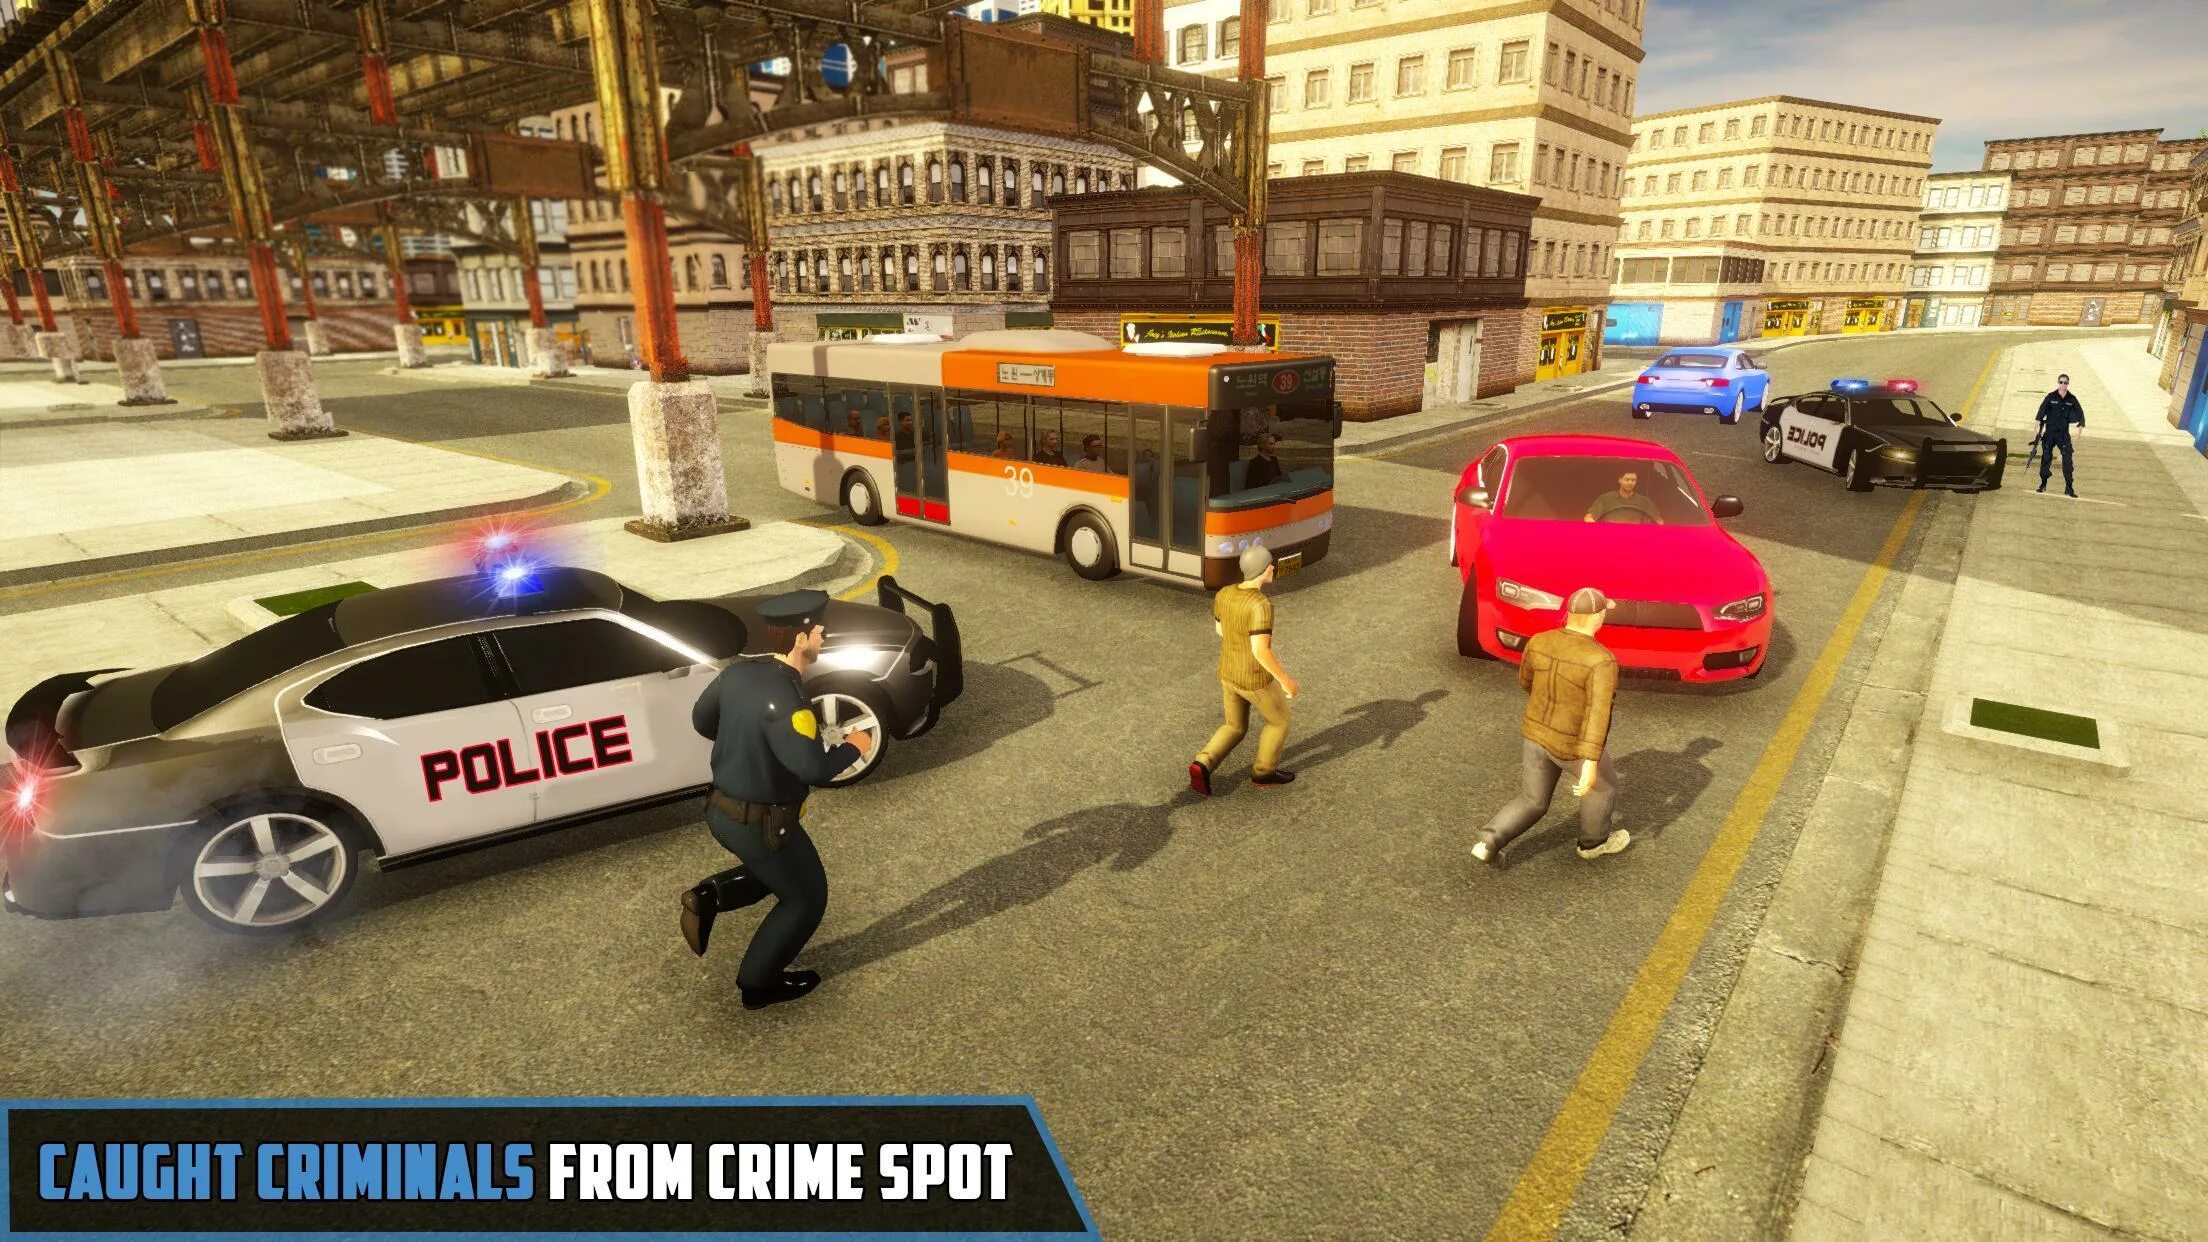 The Police игра. Игры про полицию. Новая игра полиция. Американская полиция в играх. Бесплатные игры про полицейских